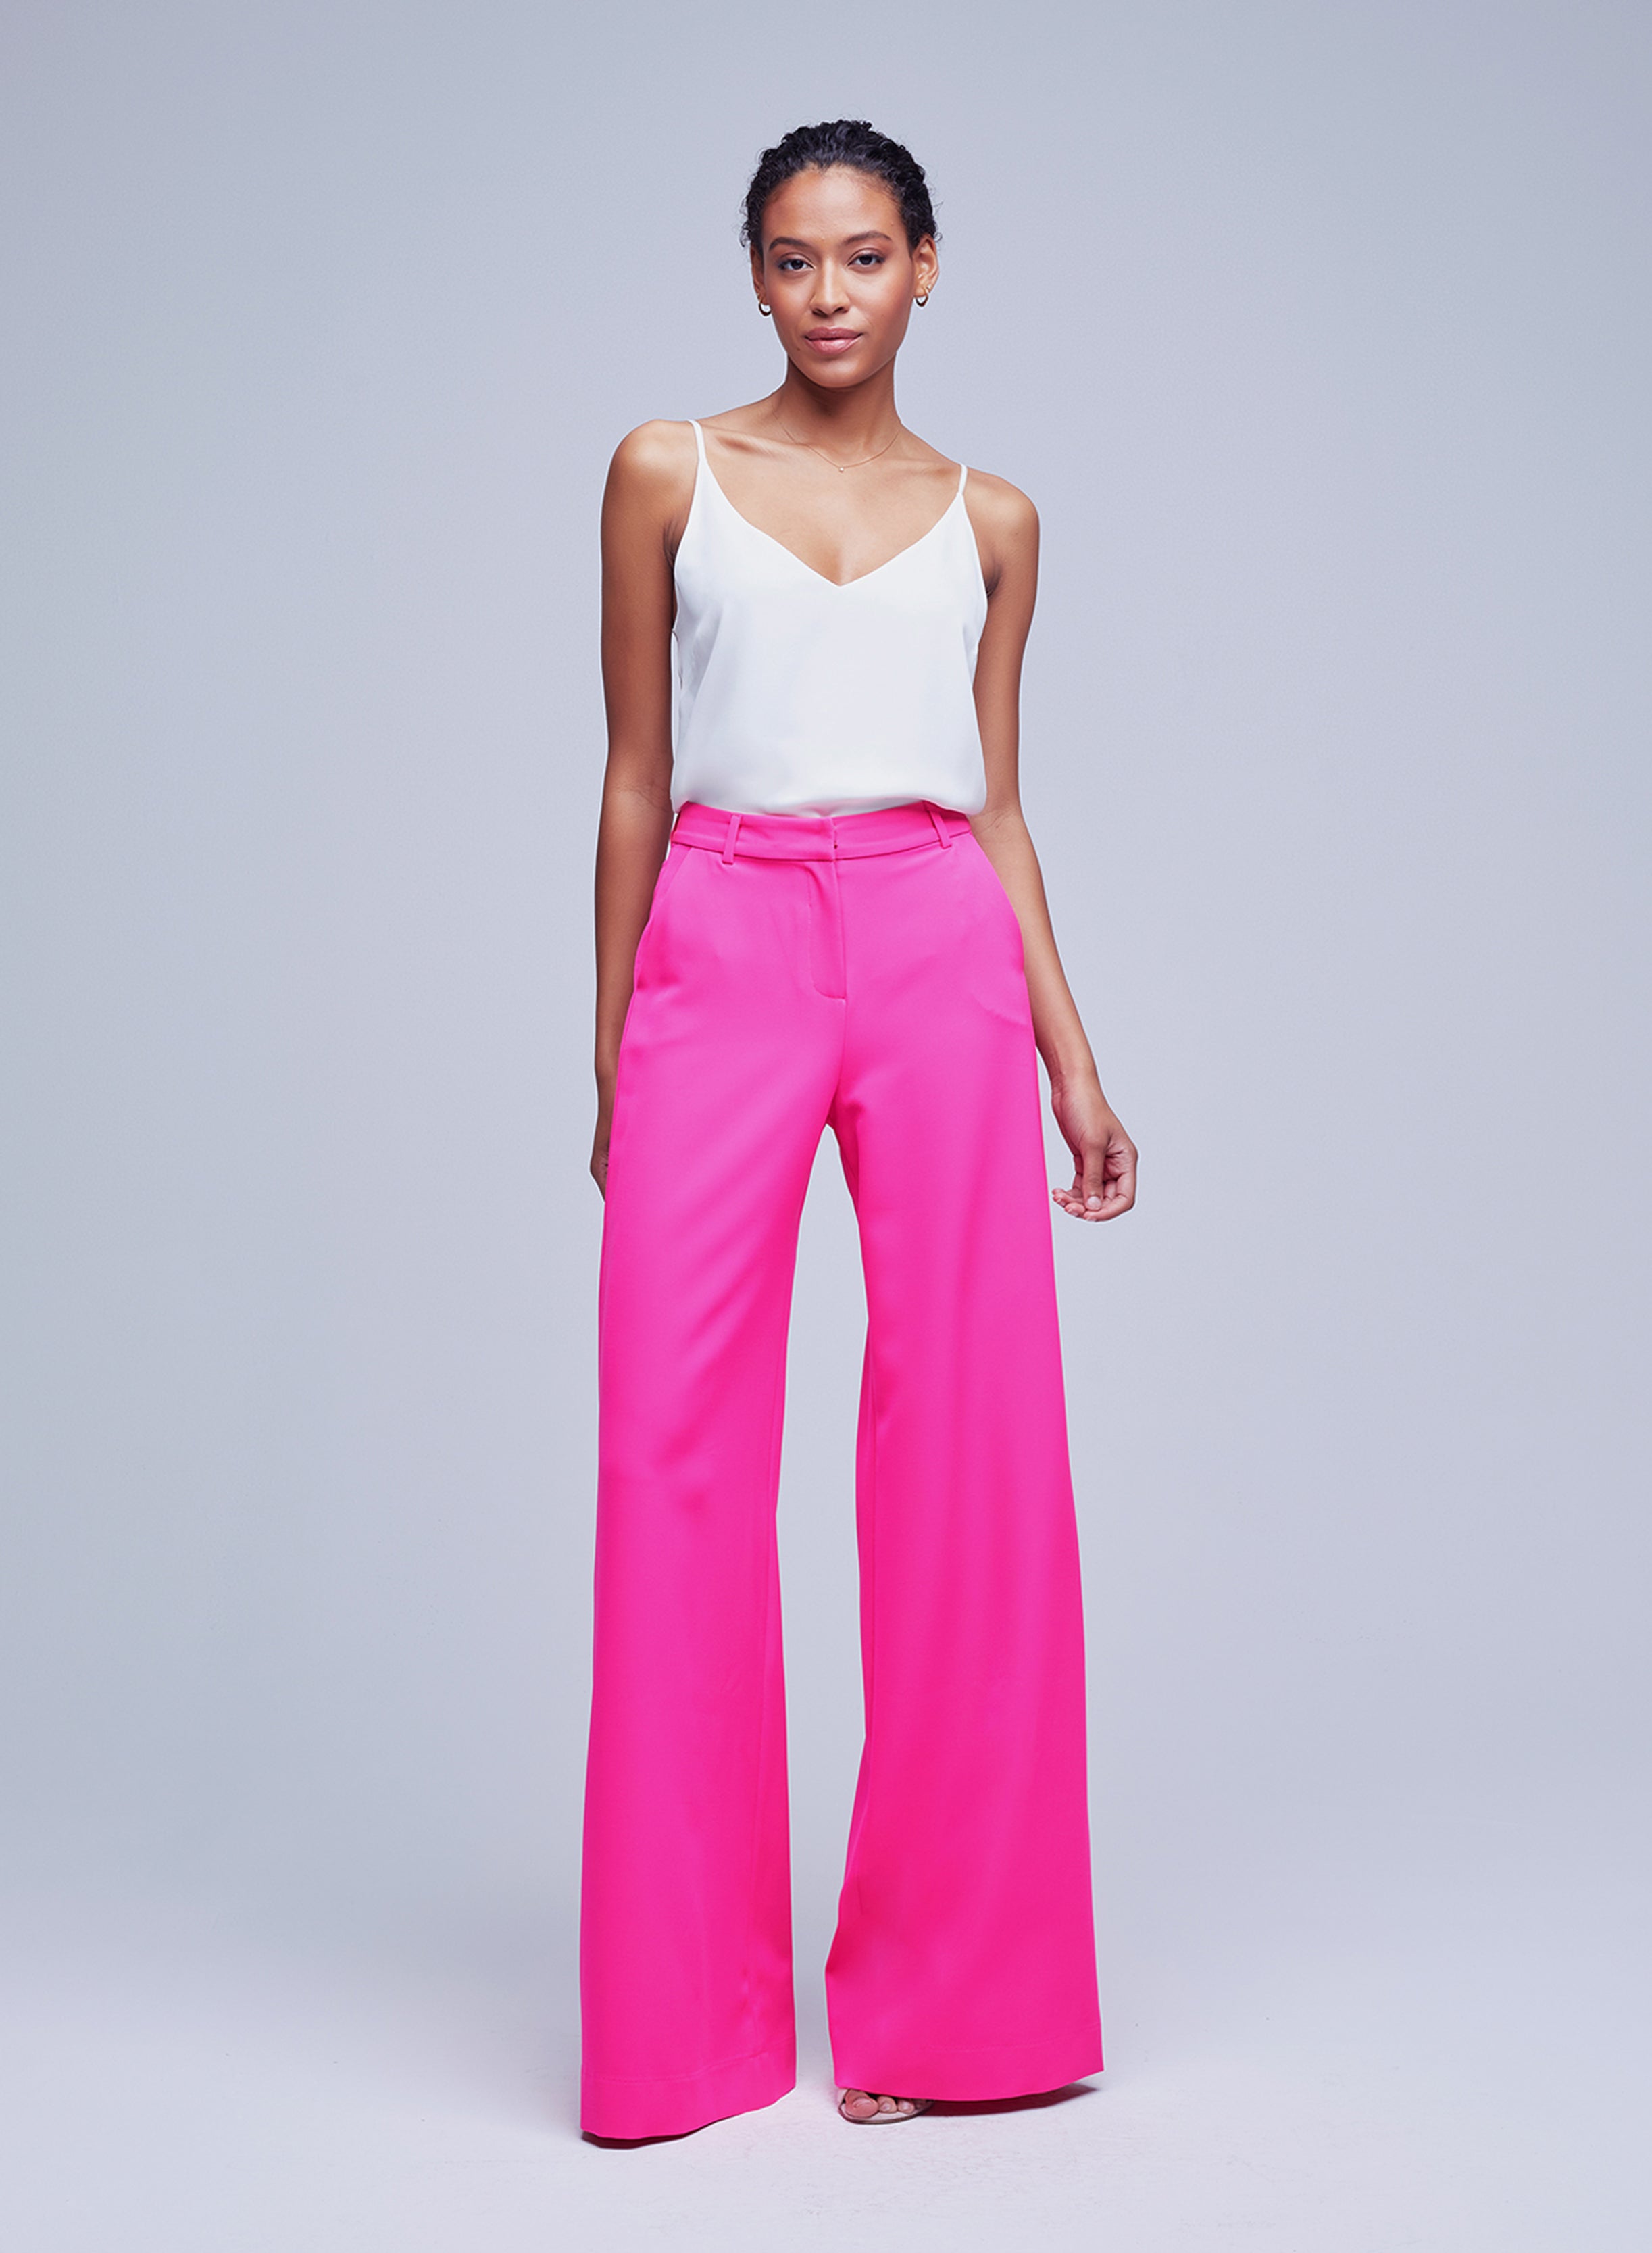 Zara high waist baggy pants rose pink cotton/linen blend size EUR 34 US 2  NWT